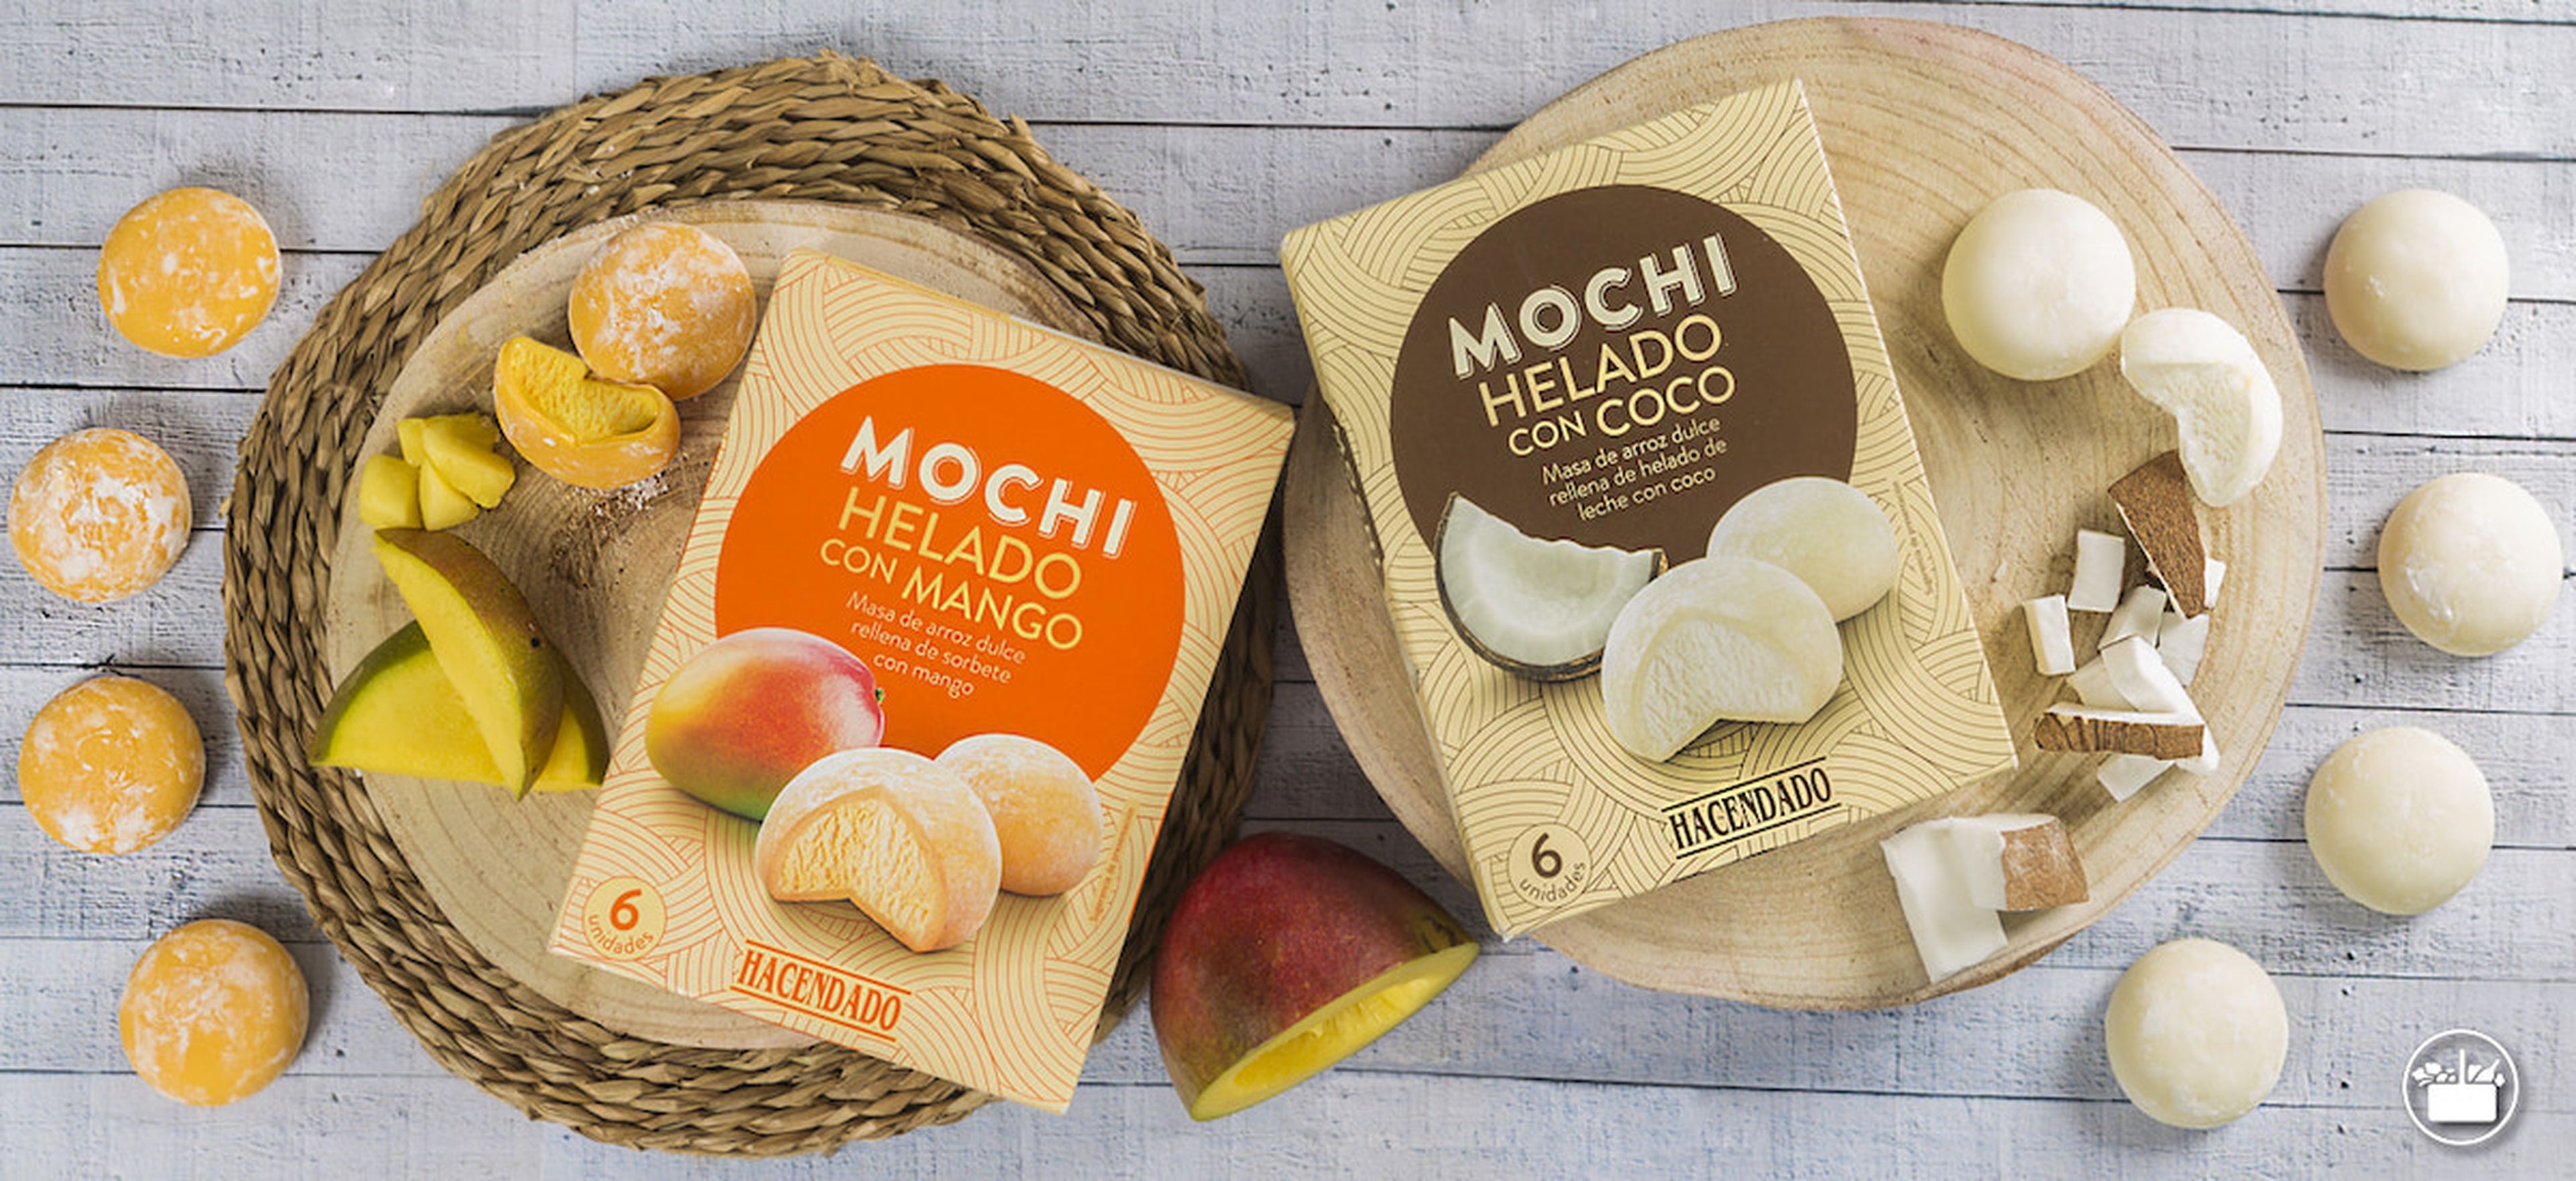 Mochi helado Mercadona